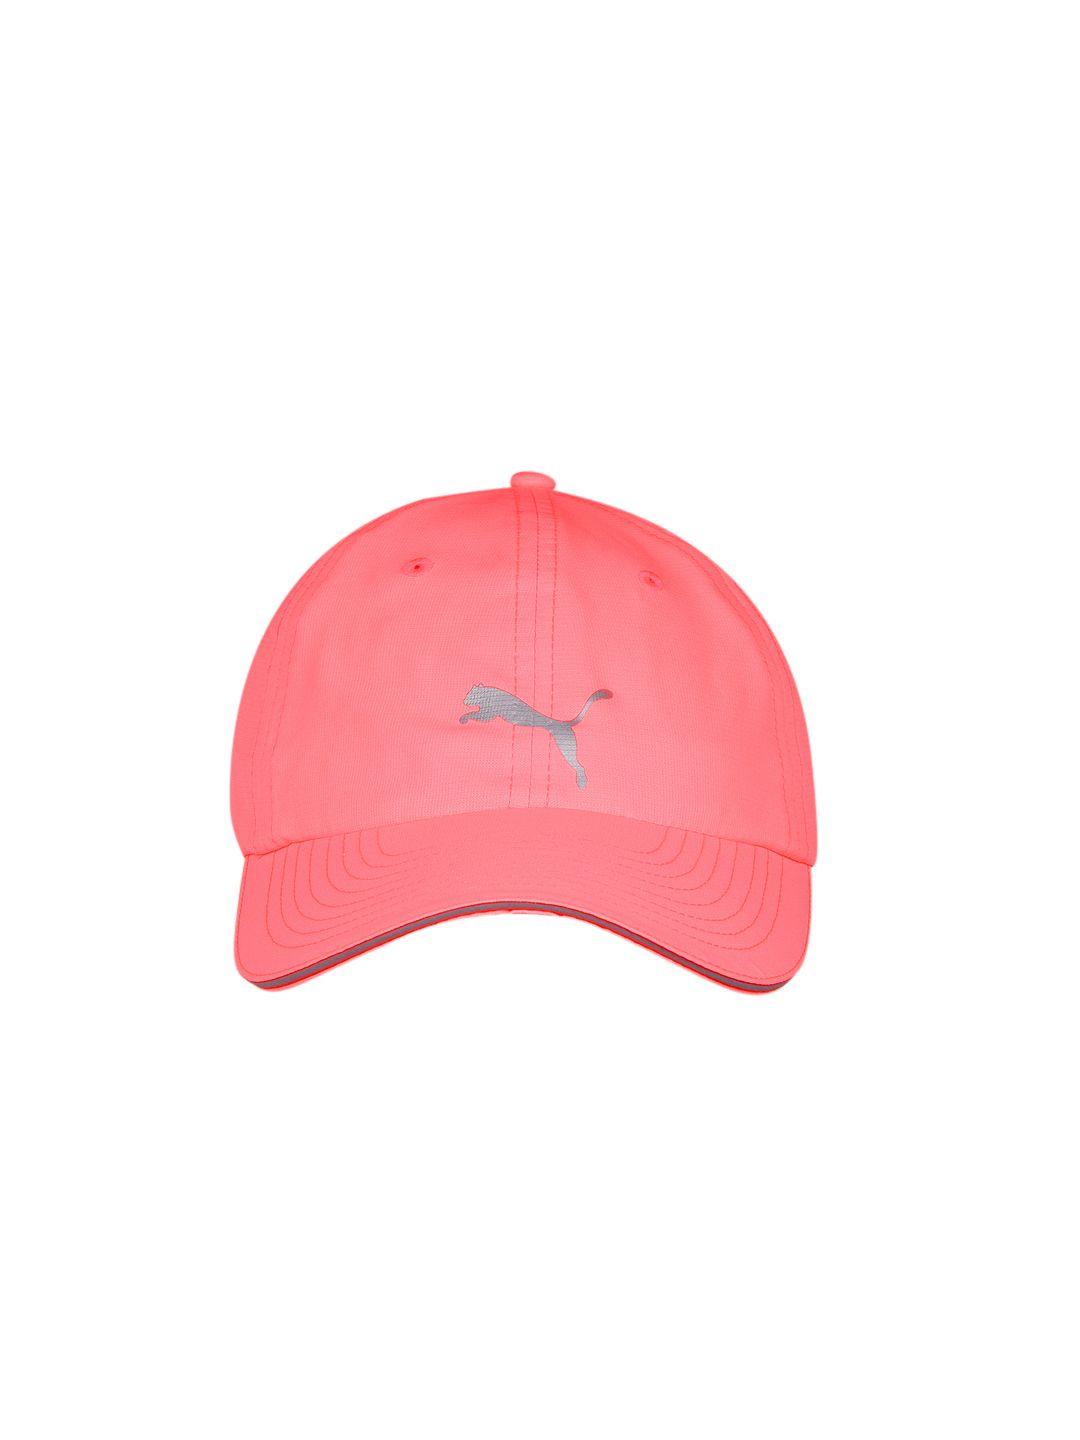 puma unisex pink running cap